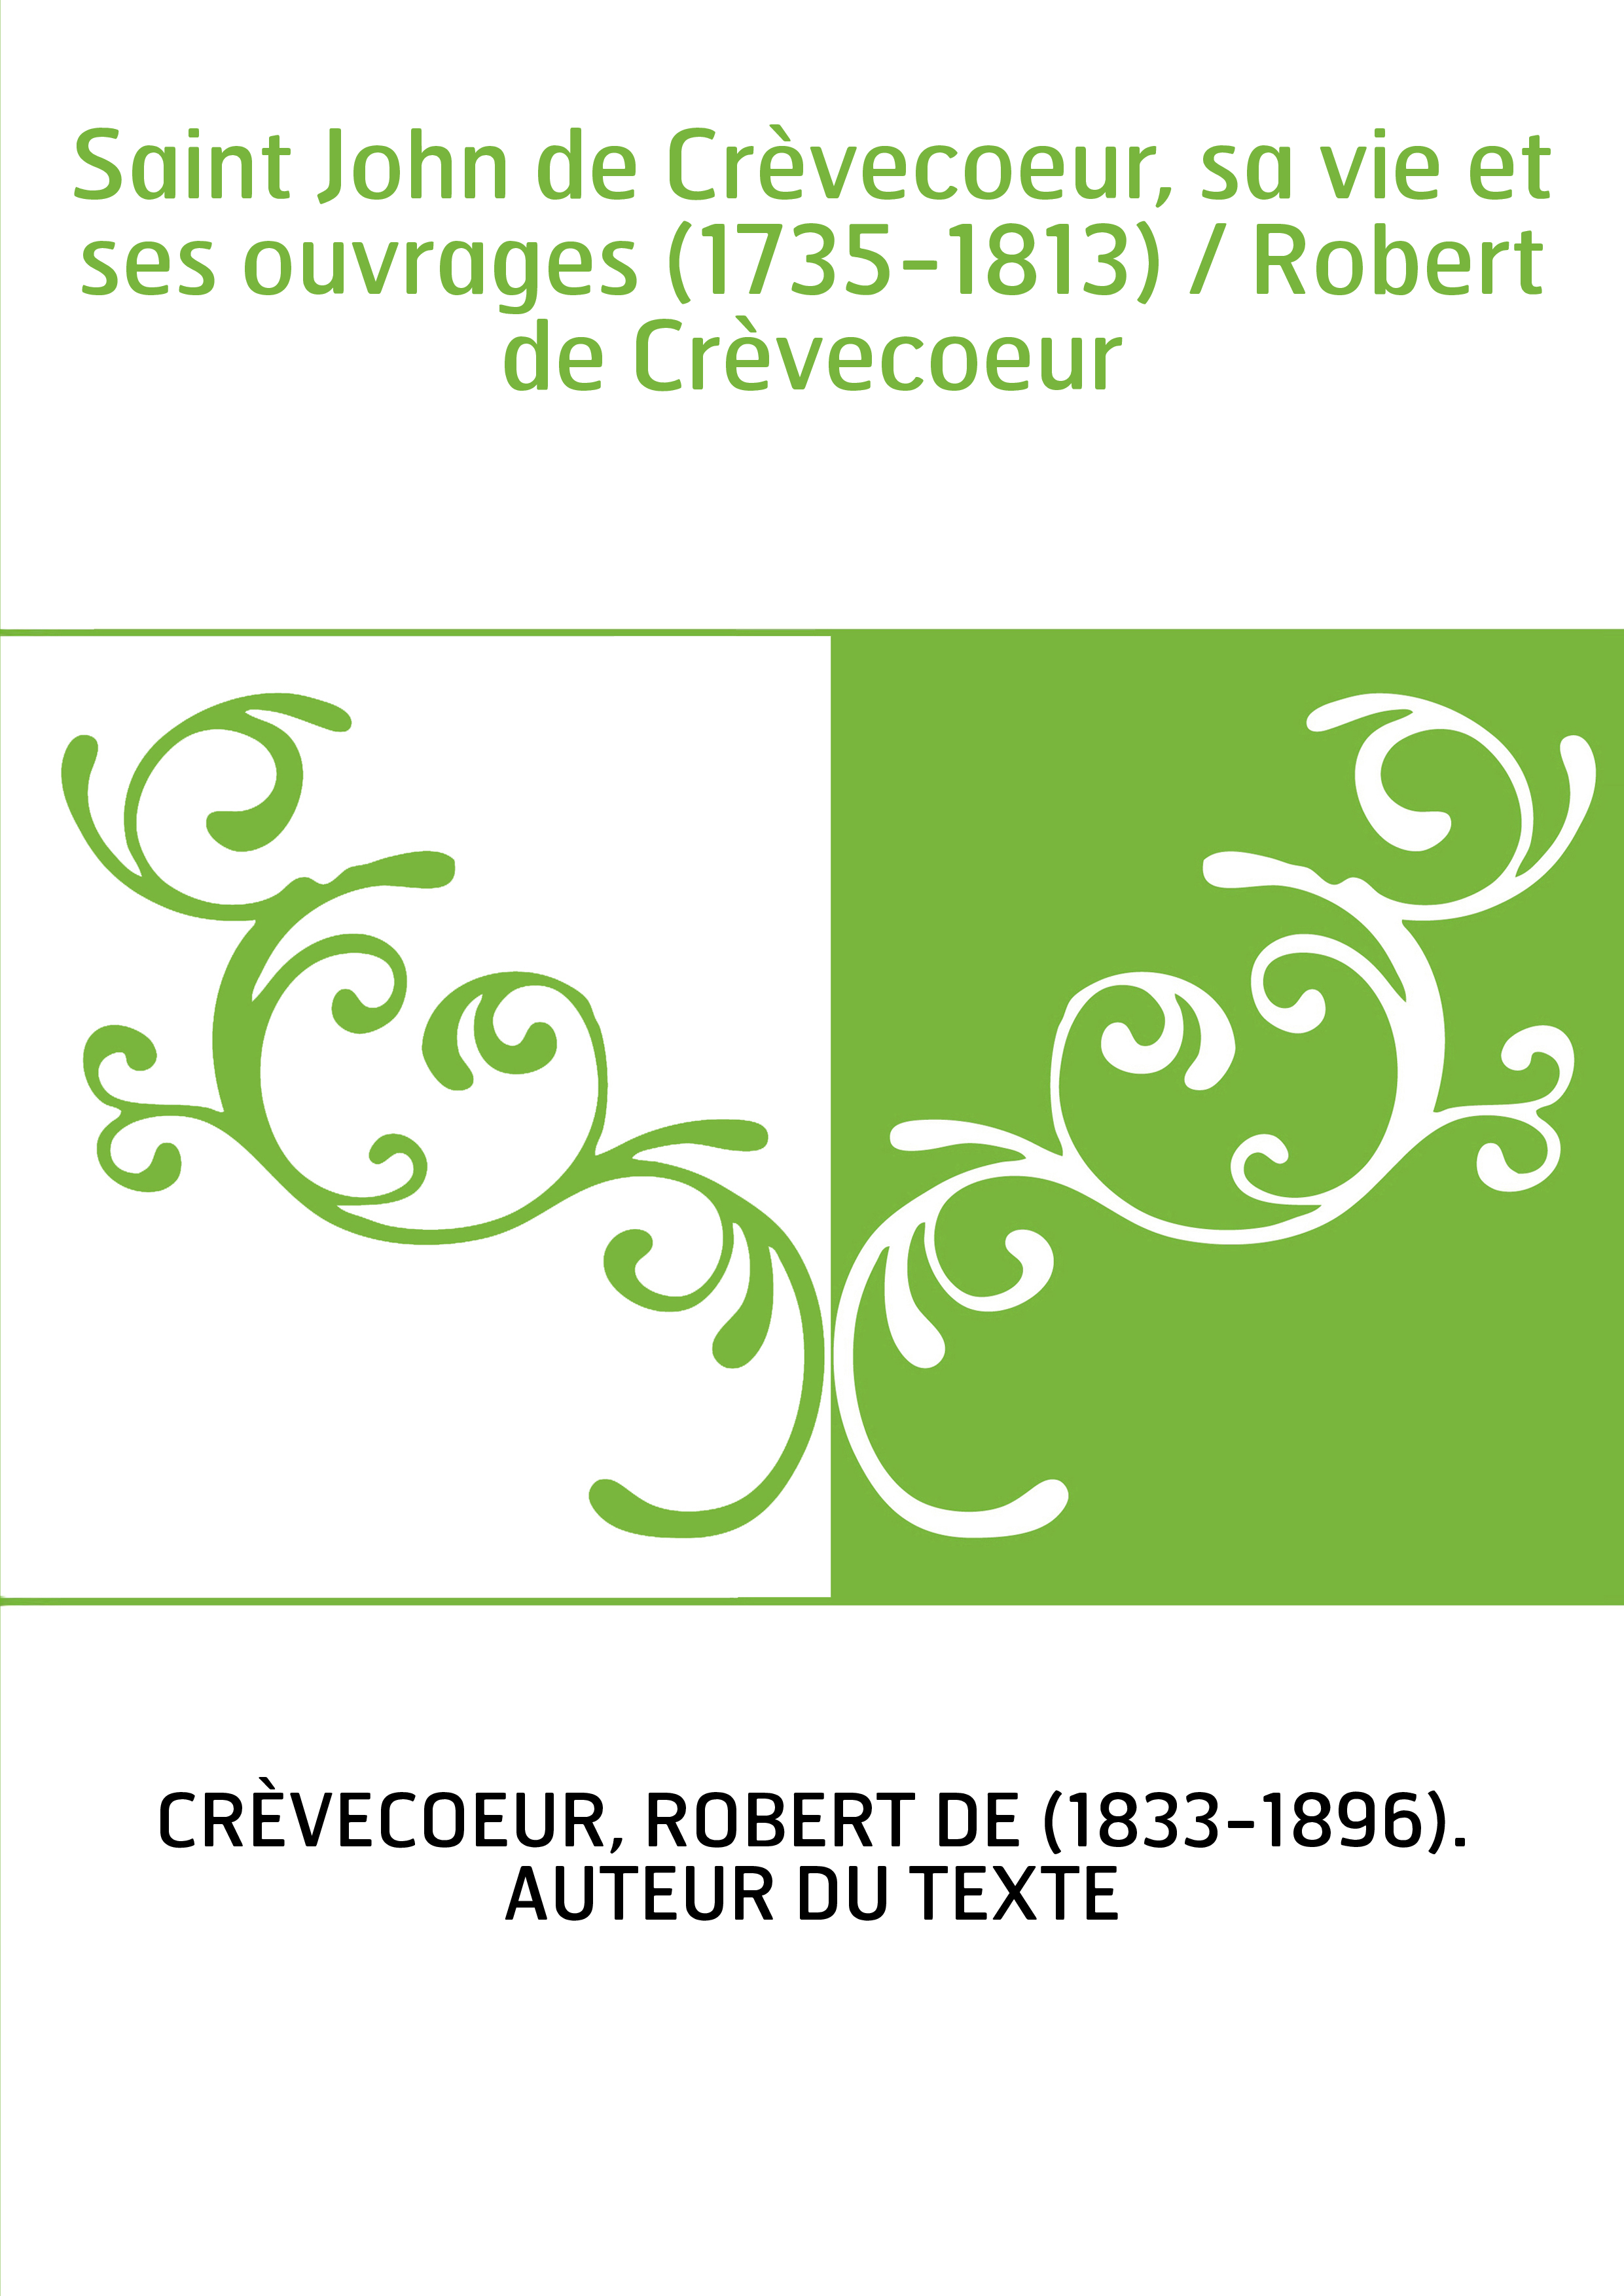 Saint John de Crèvecoeur, sa vie et ses ouvrages (1735-1813) / Robert de Crèvecoeur